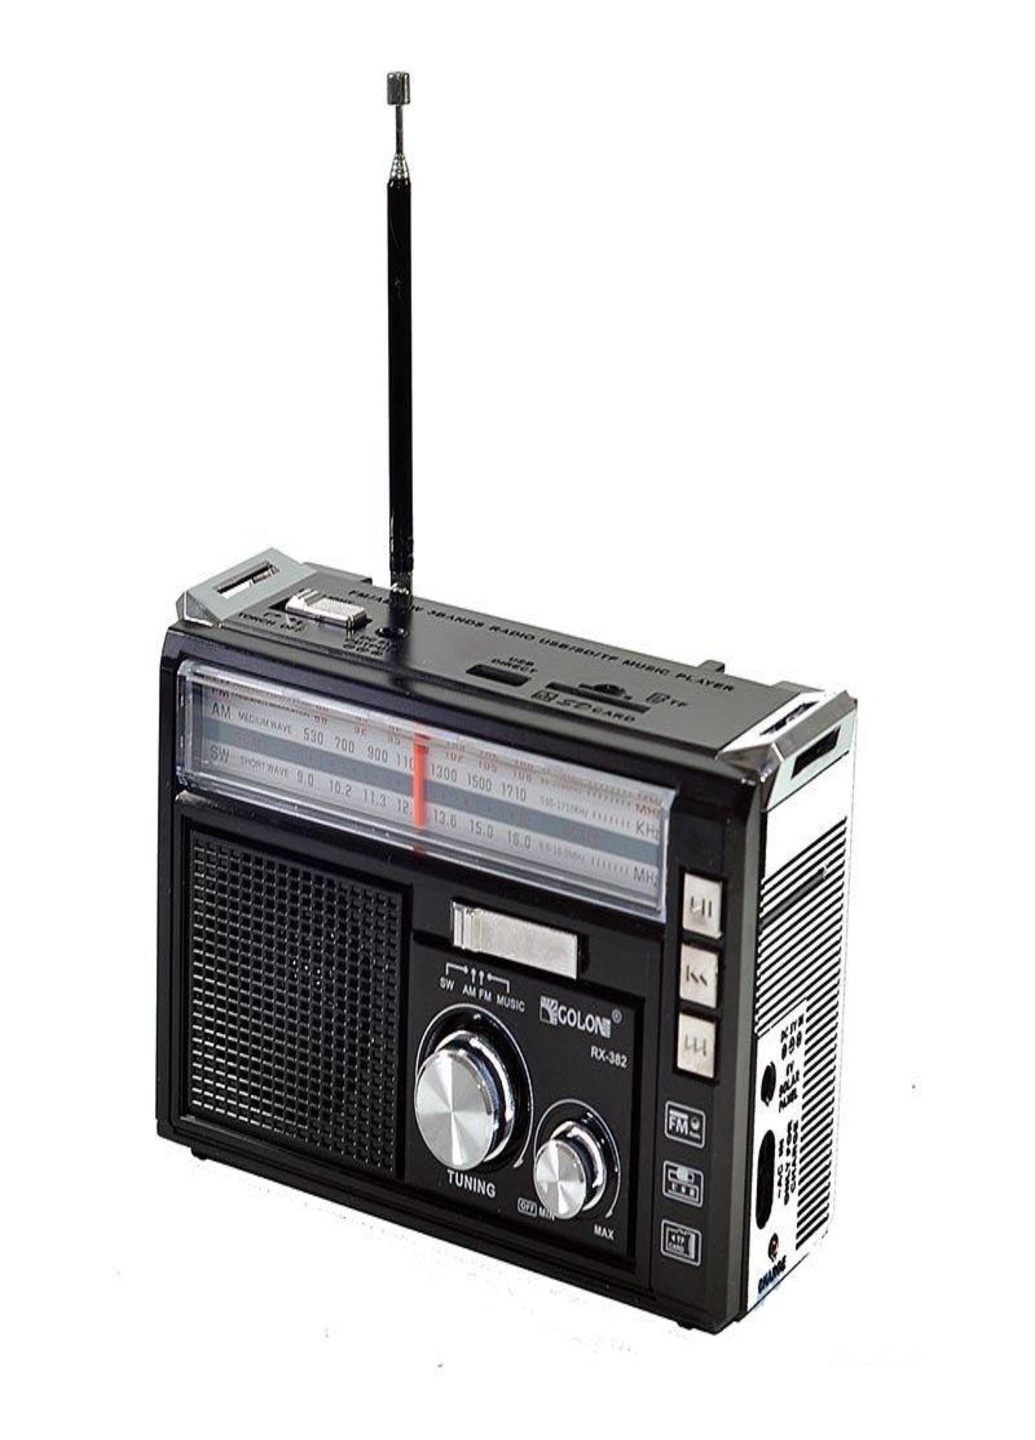 Радиоприемник USB/SD Golon RX-382 радио с MP3 и LED фонариком Черный Art (255679222)